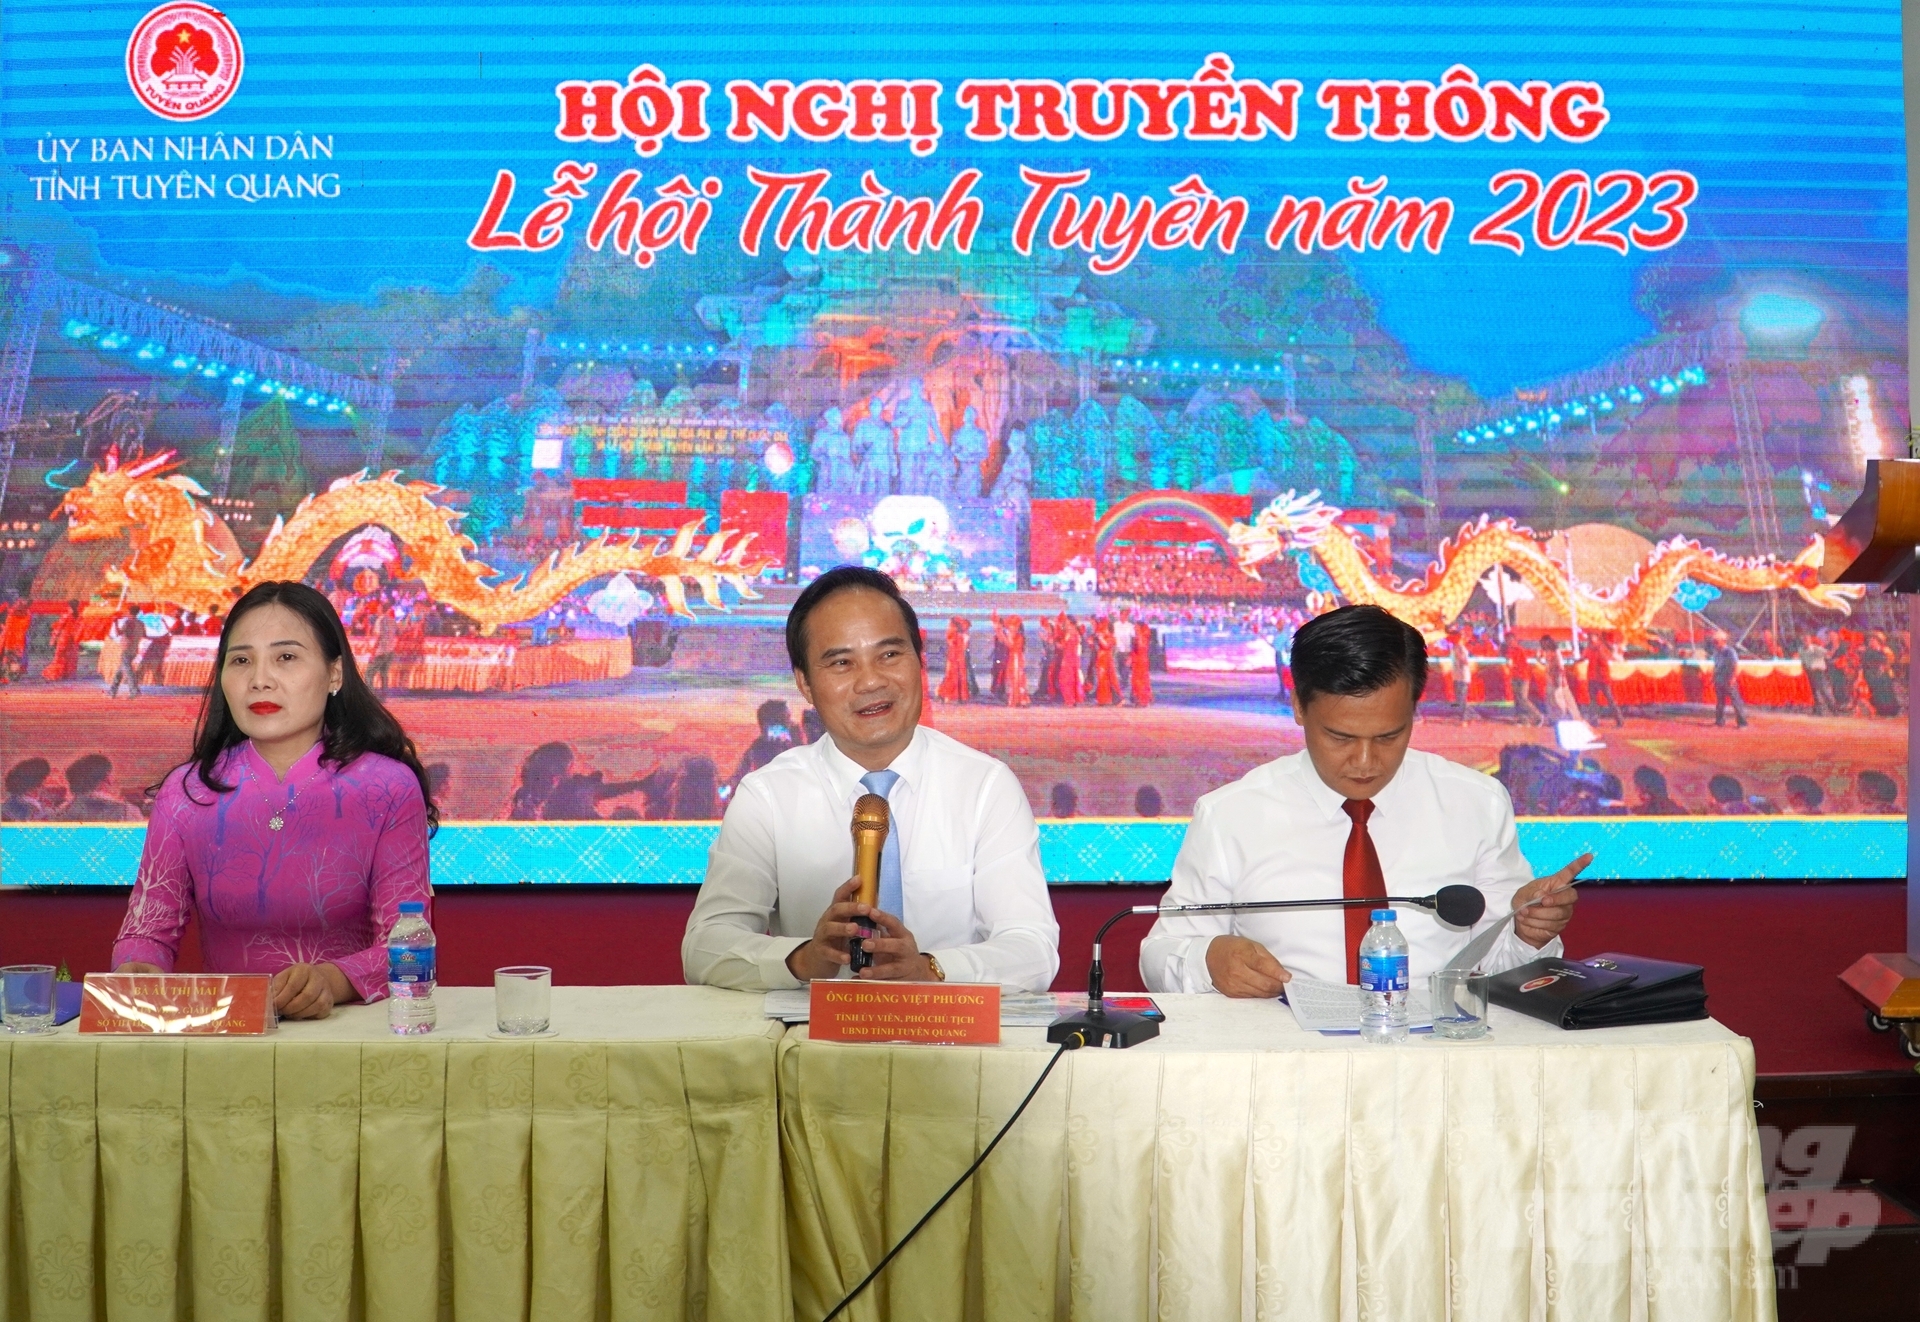 UBND tỉnh Tuyên Quang tổ chức truyền thông về Lễ hội Thành Tuyên 2023 tại TP Cần Thơ. Ảnh: Kim Anh.